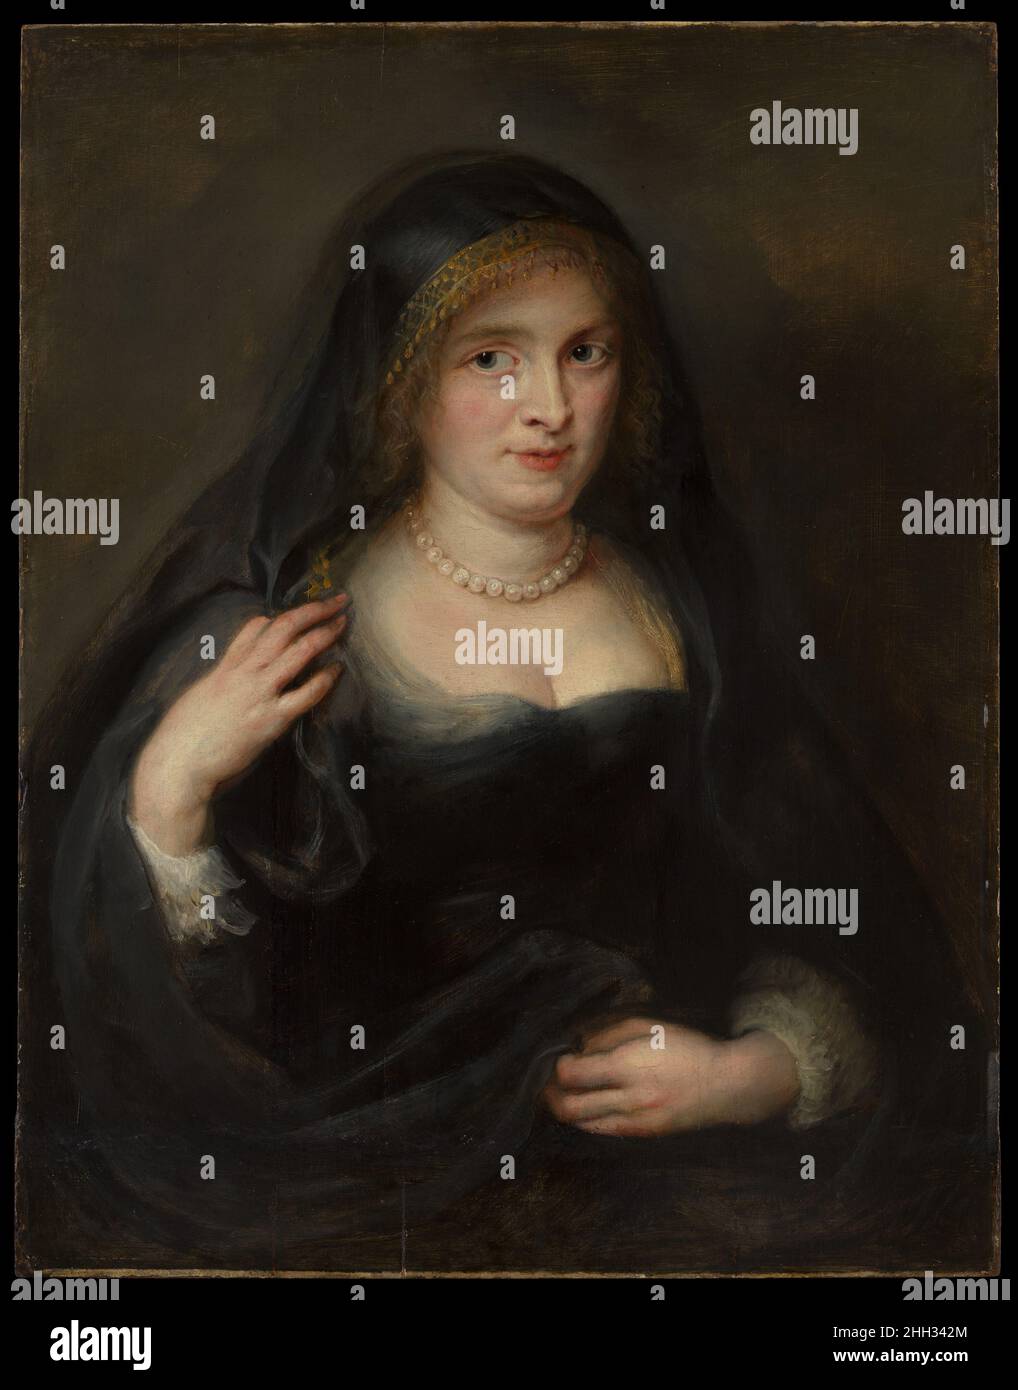 Portrait d'une femme, probablement Susanna Lunden (Susanna Fourment, 1599–1628) ca.1625–27 Peter Paul Rubens Flamand les portraits d’amis et de membres de la famille de Rubens sont quelques-unes de ses peintures les plus attrayantes pour un œil moderne.Cette ressemblance intime représente probablement une sœur d’Helena Fourment, la deuxième femme de Rubens et la plus jeune des sept filles du marchand de soie d’Anvers Daniel Fourment.Rubens a déplacé le voile porté par le sitter au cours de son travail sur la peinture, et ses contours antérieurs sont devenus visibles au fil du temps.Portrait d'une femme, probablement Susanna Lunden (Susanna Fourment, Banque D'Images